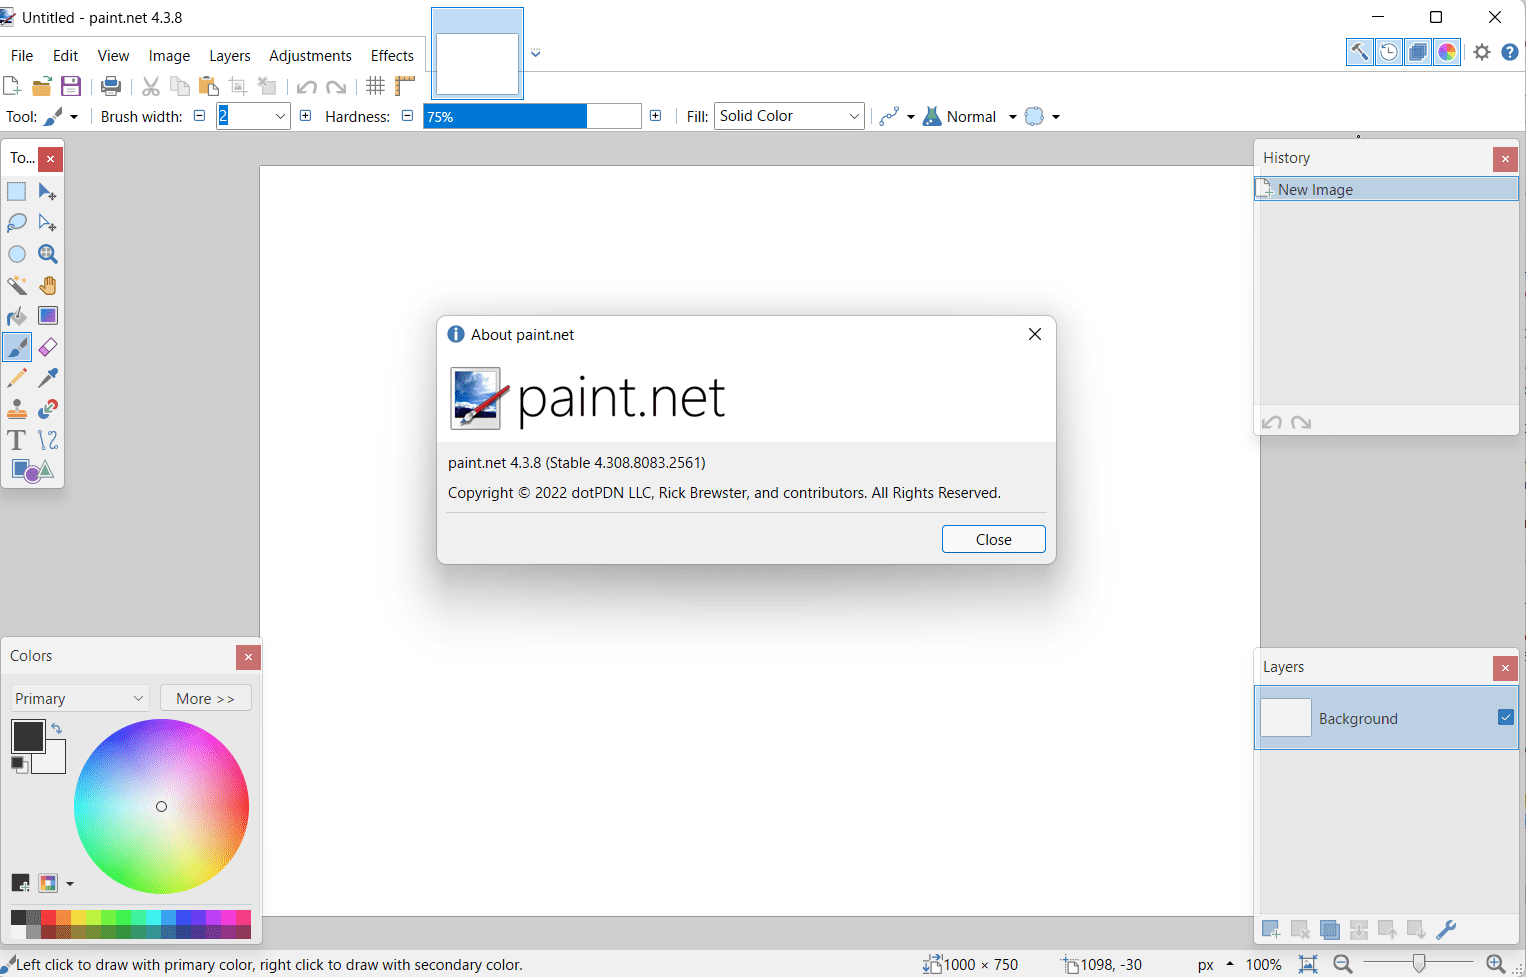 paint.net 4.3.8